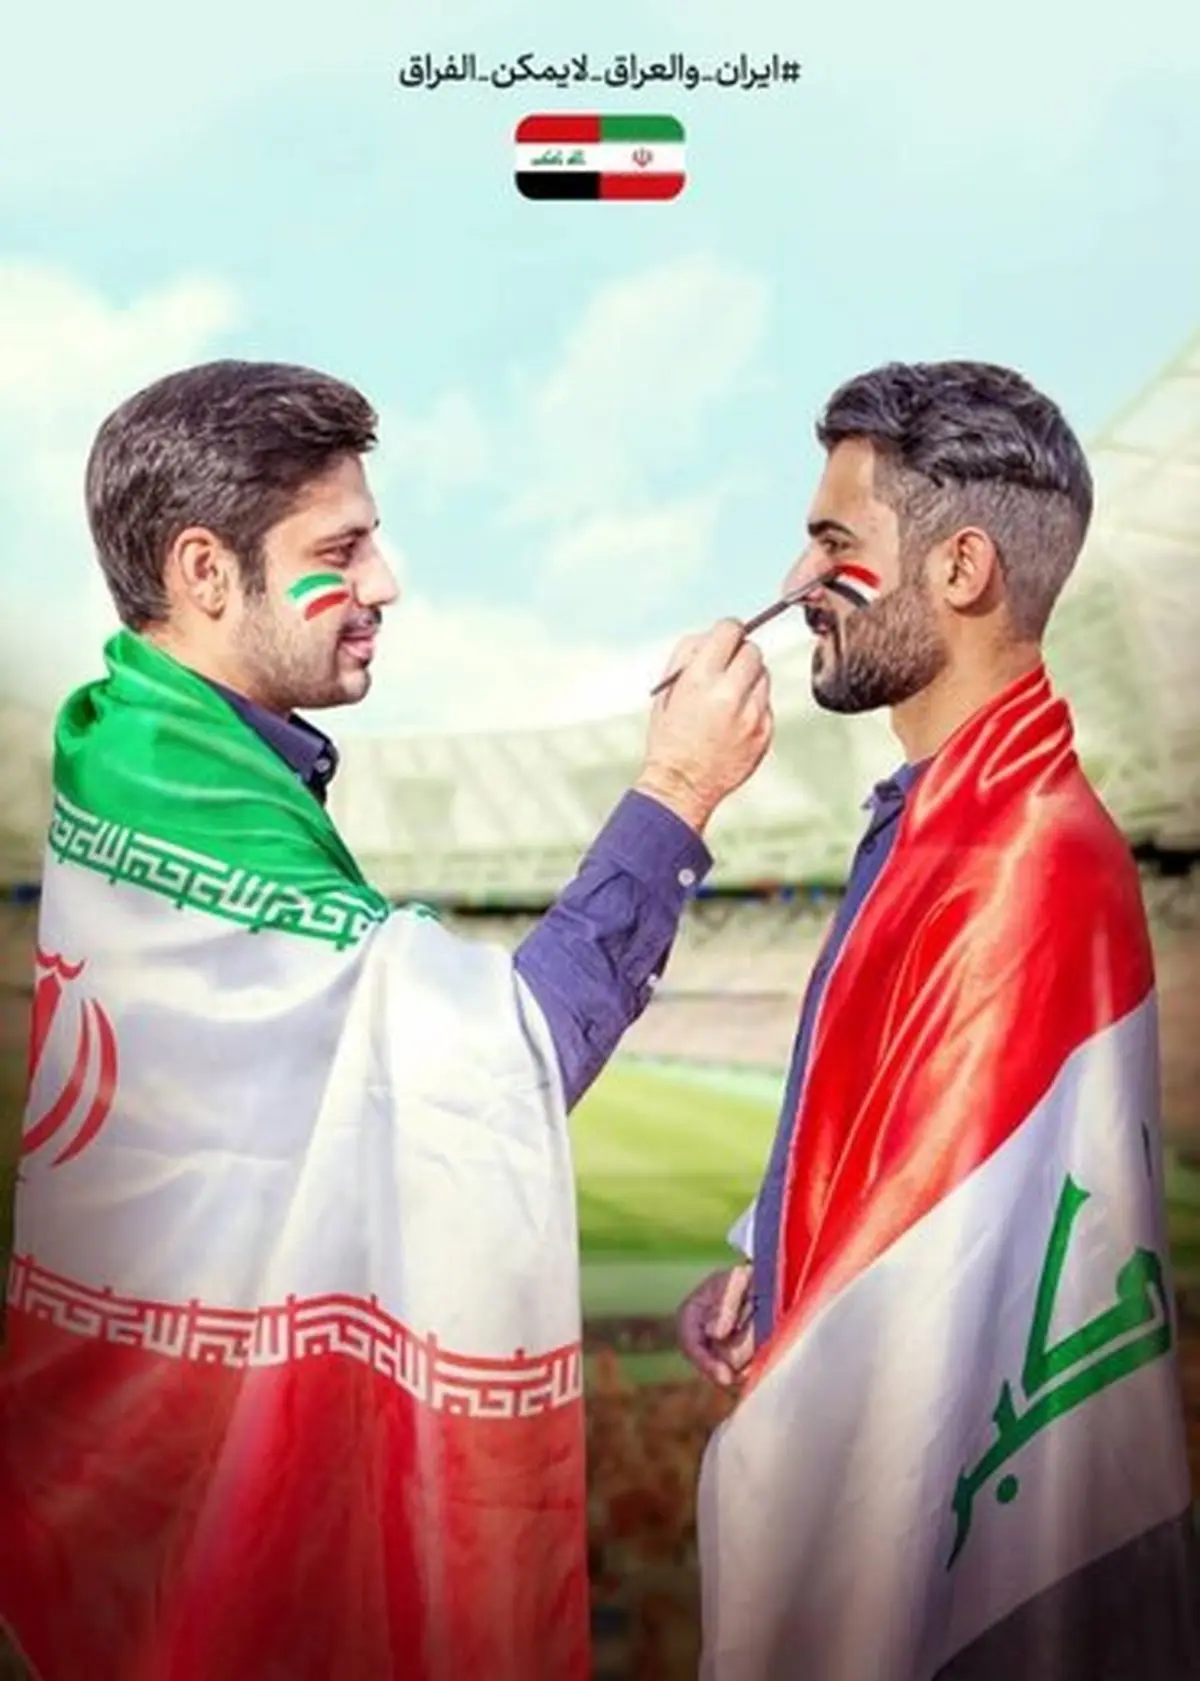 تصویر | دو پوستر متفاوت از بازی حساس و پر از کری ایران و عراق!دو ملت ایران و عراق تاکیدی ویژه دارد